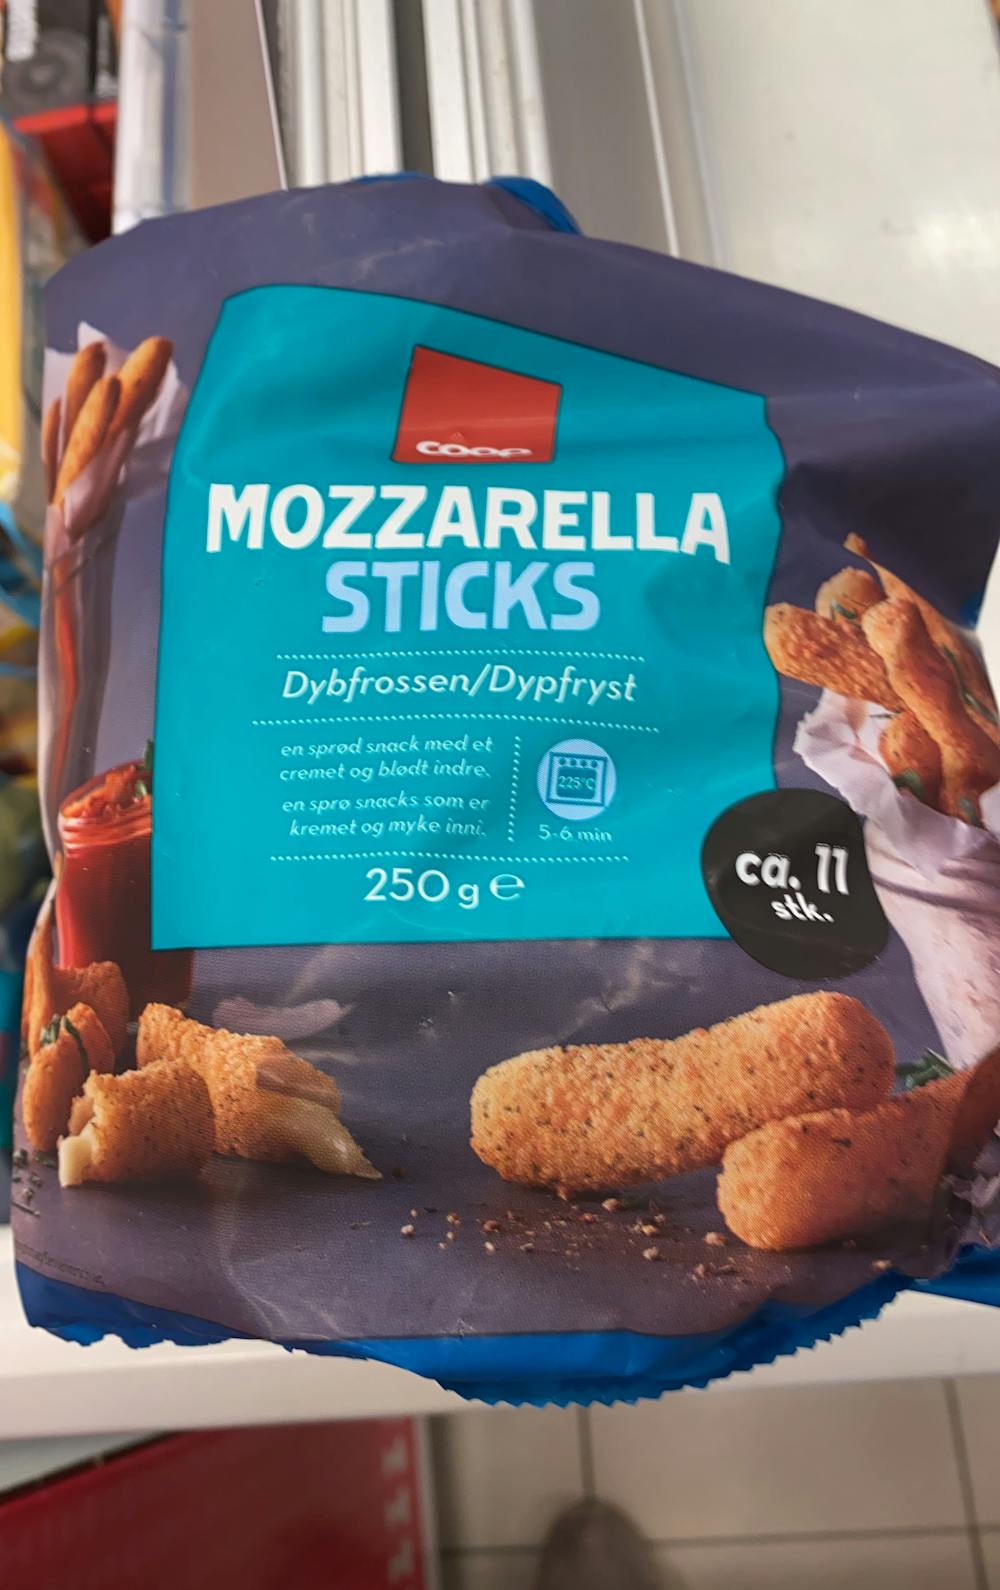 Mozzarella sticks, Coop